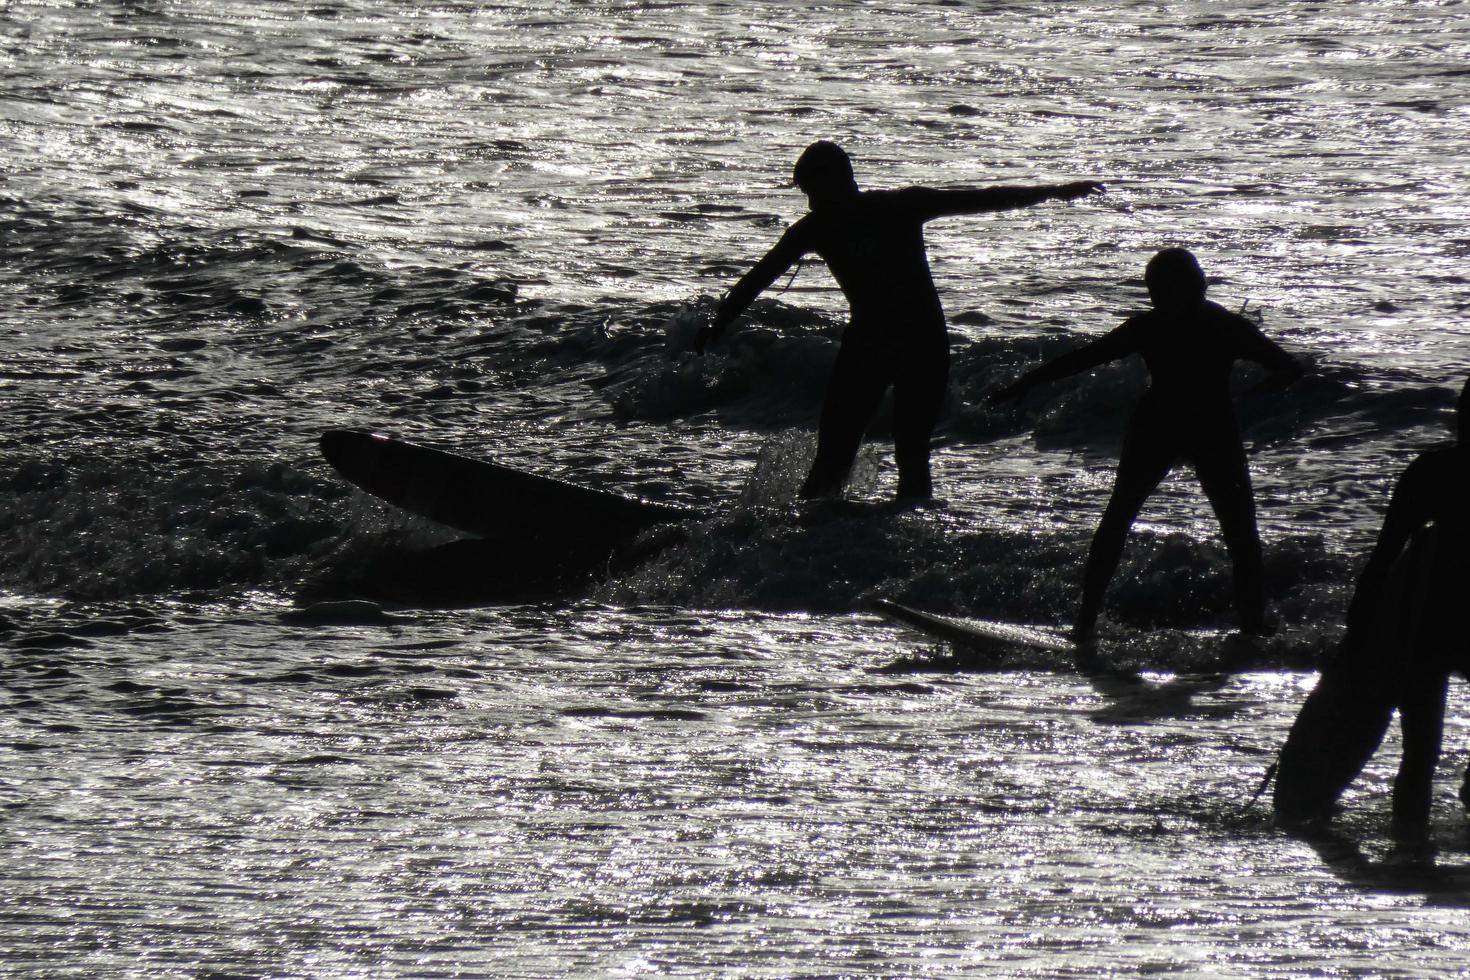 jung Sportler üben das Wasser Sport von Surfen foto